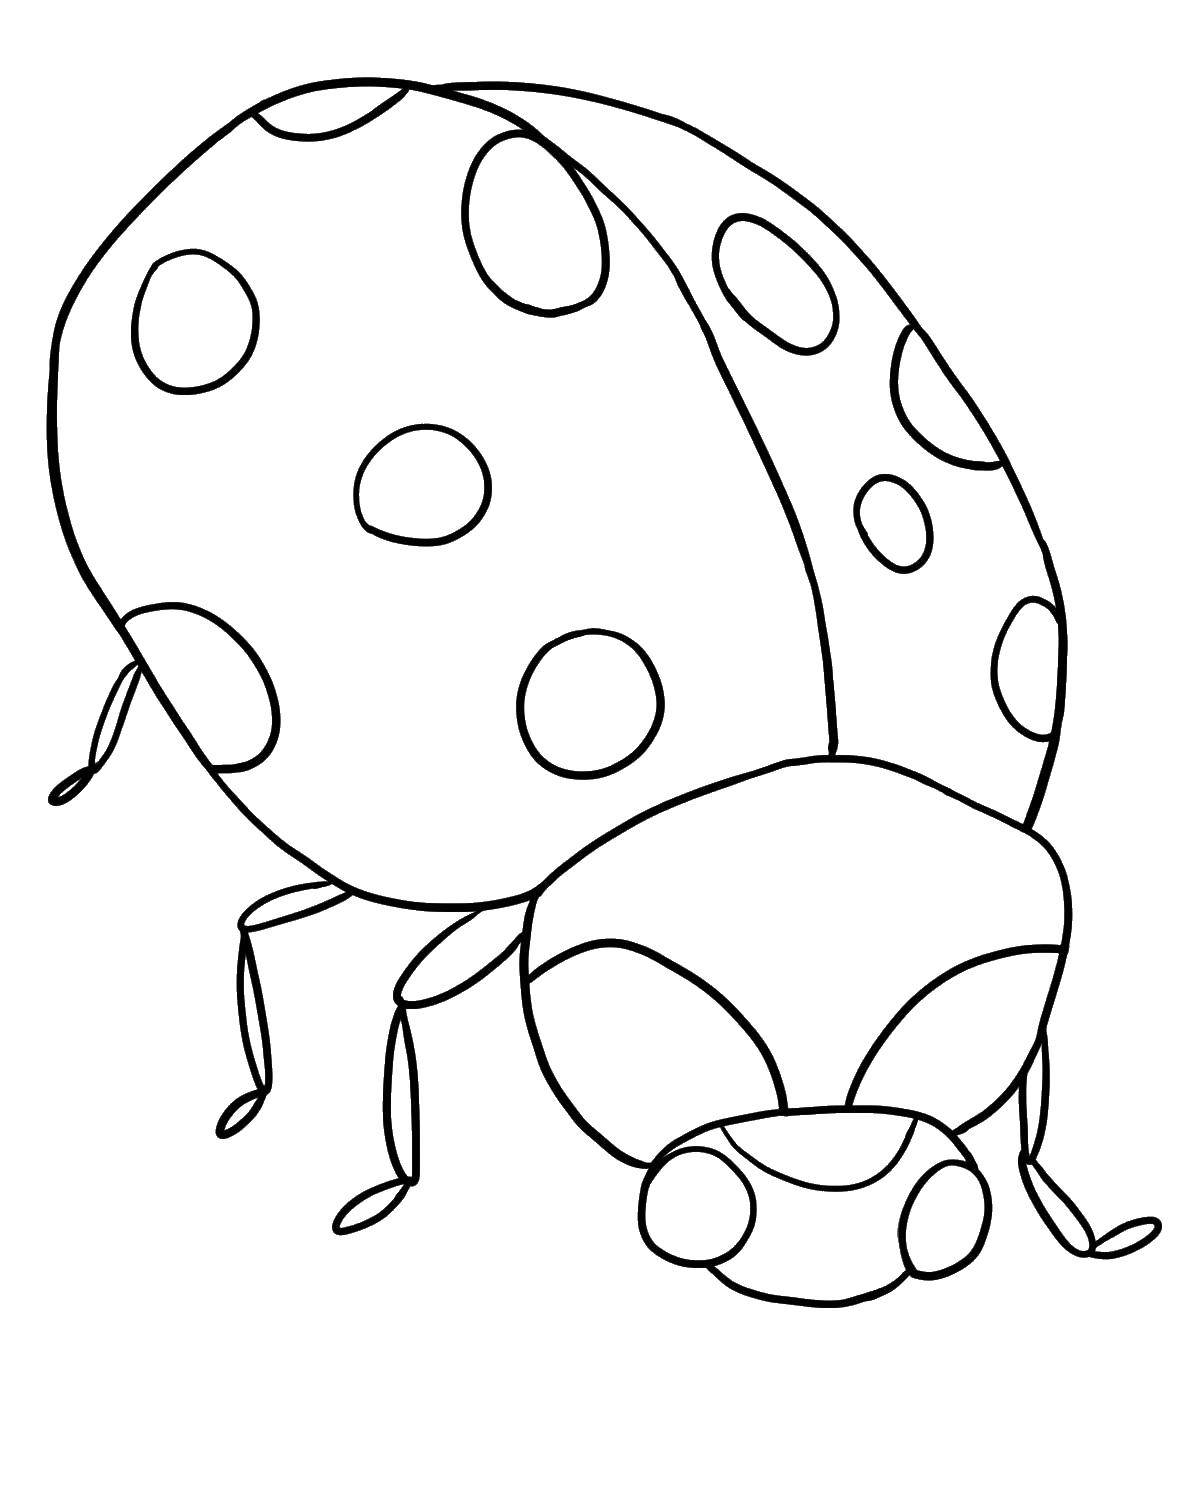 Раскрашенные картинки на тему насекомых - Божья коровка, жук (жук, познавательные, дети)